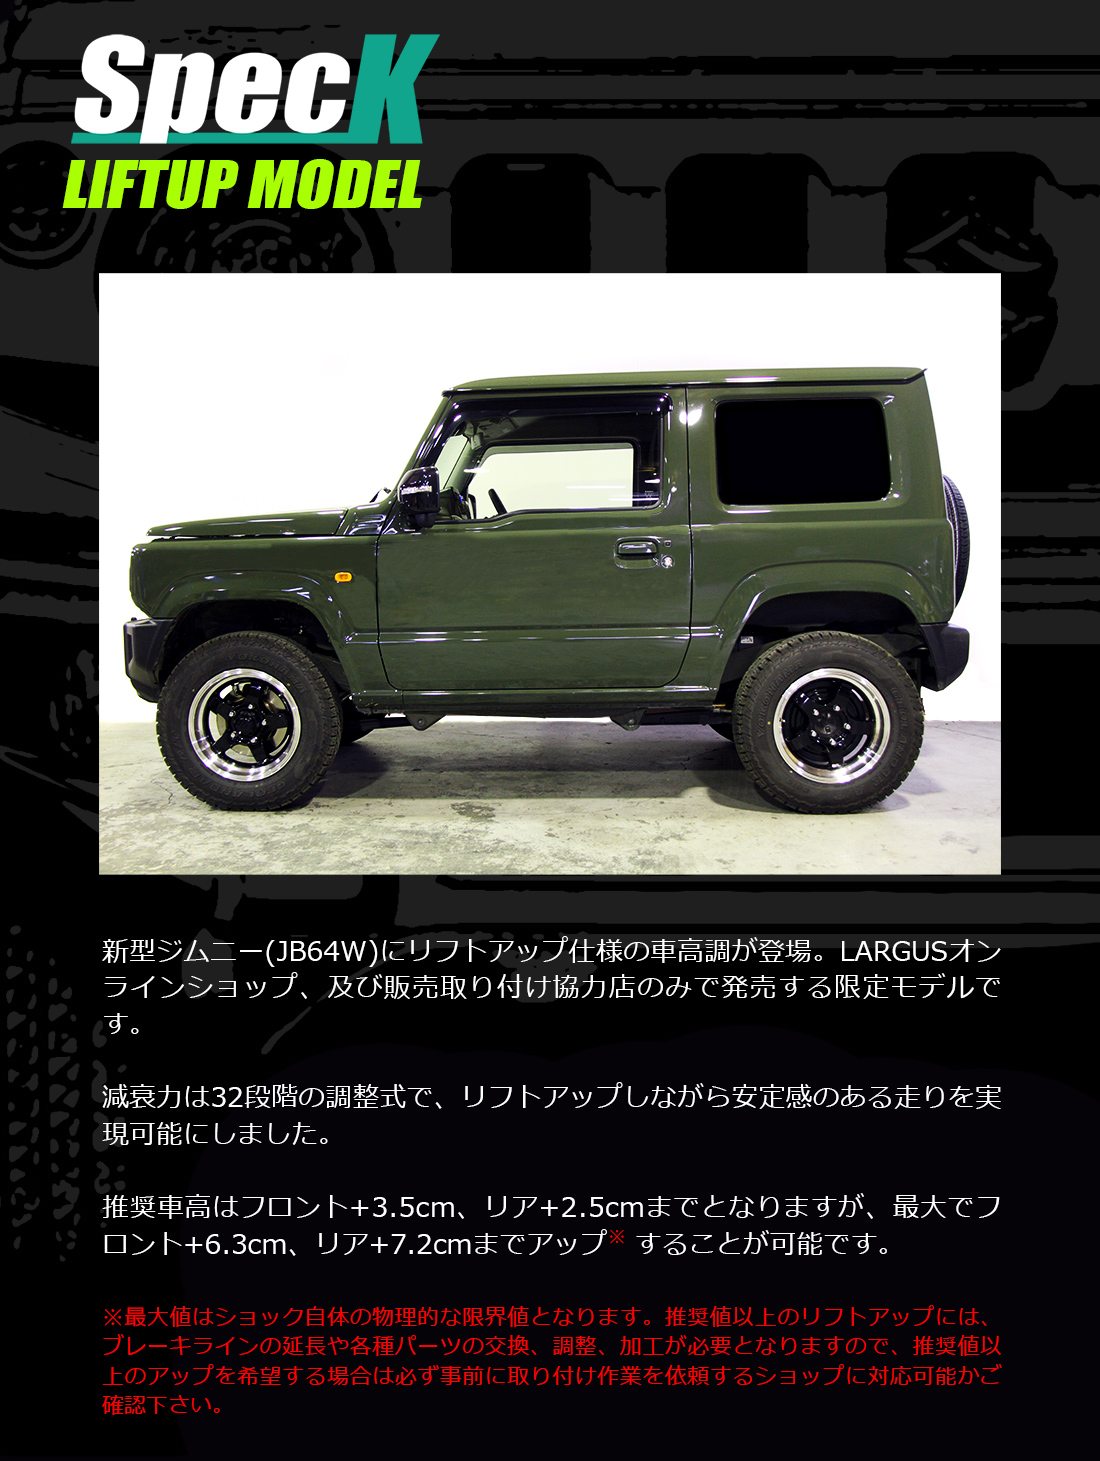 Largus Online Shop 限定モデル スズキ ジムニー Jb64w 4wd Speck 車高調キット リフトアップモデル